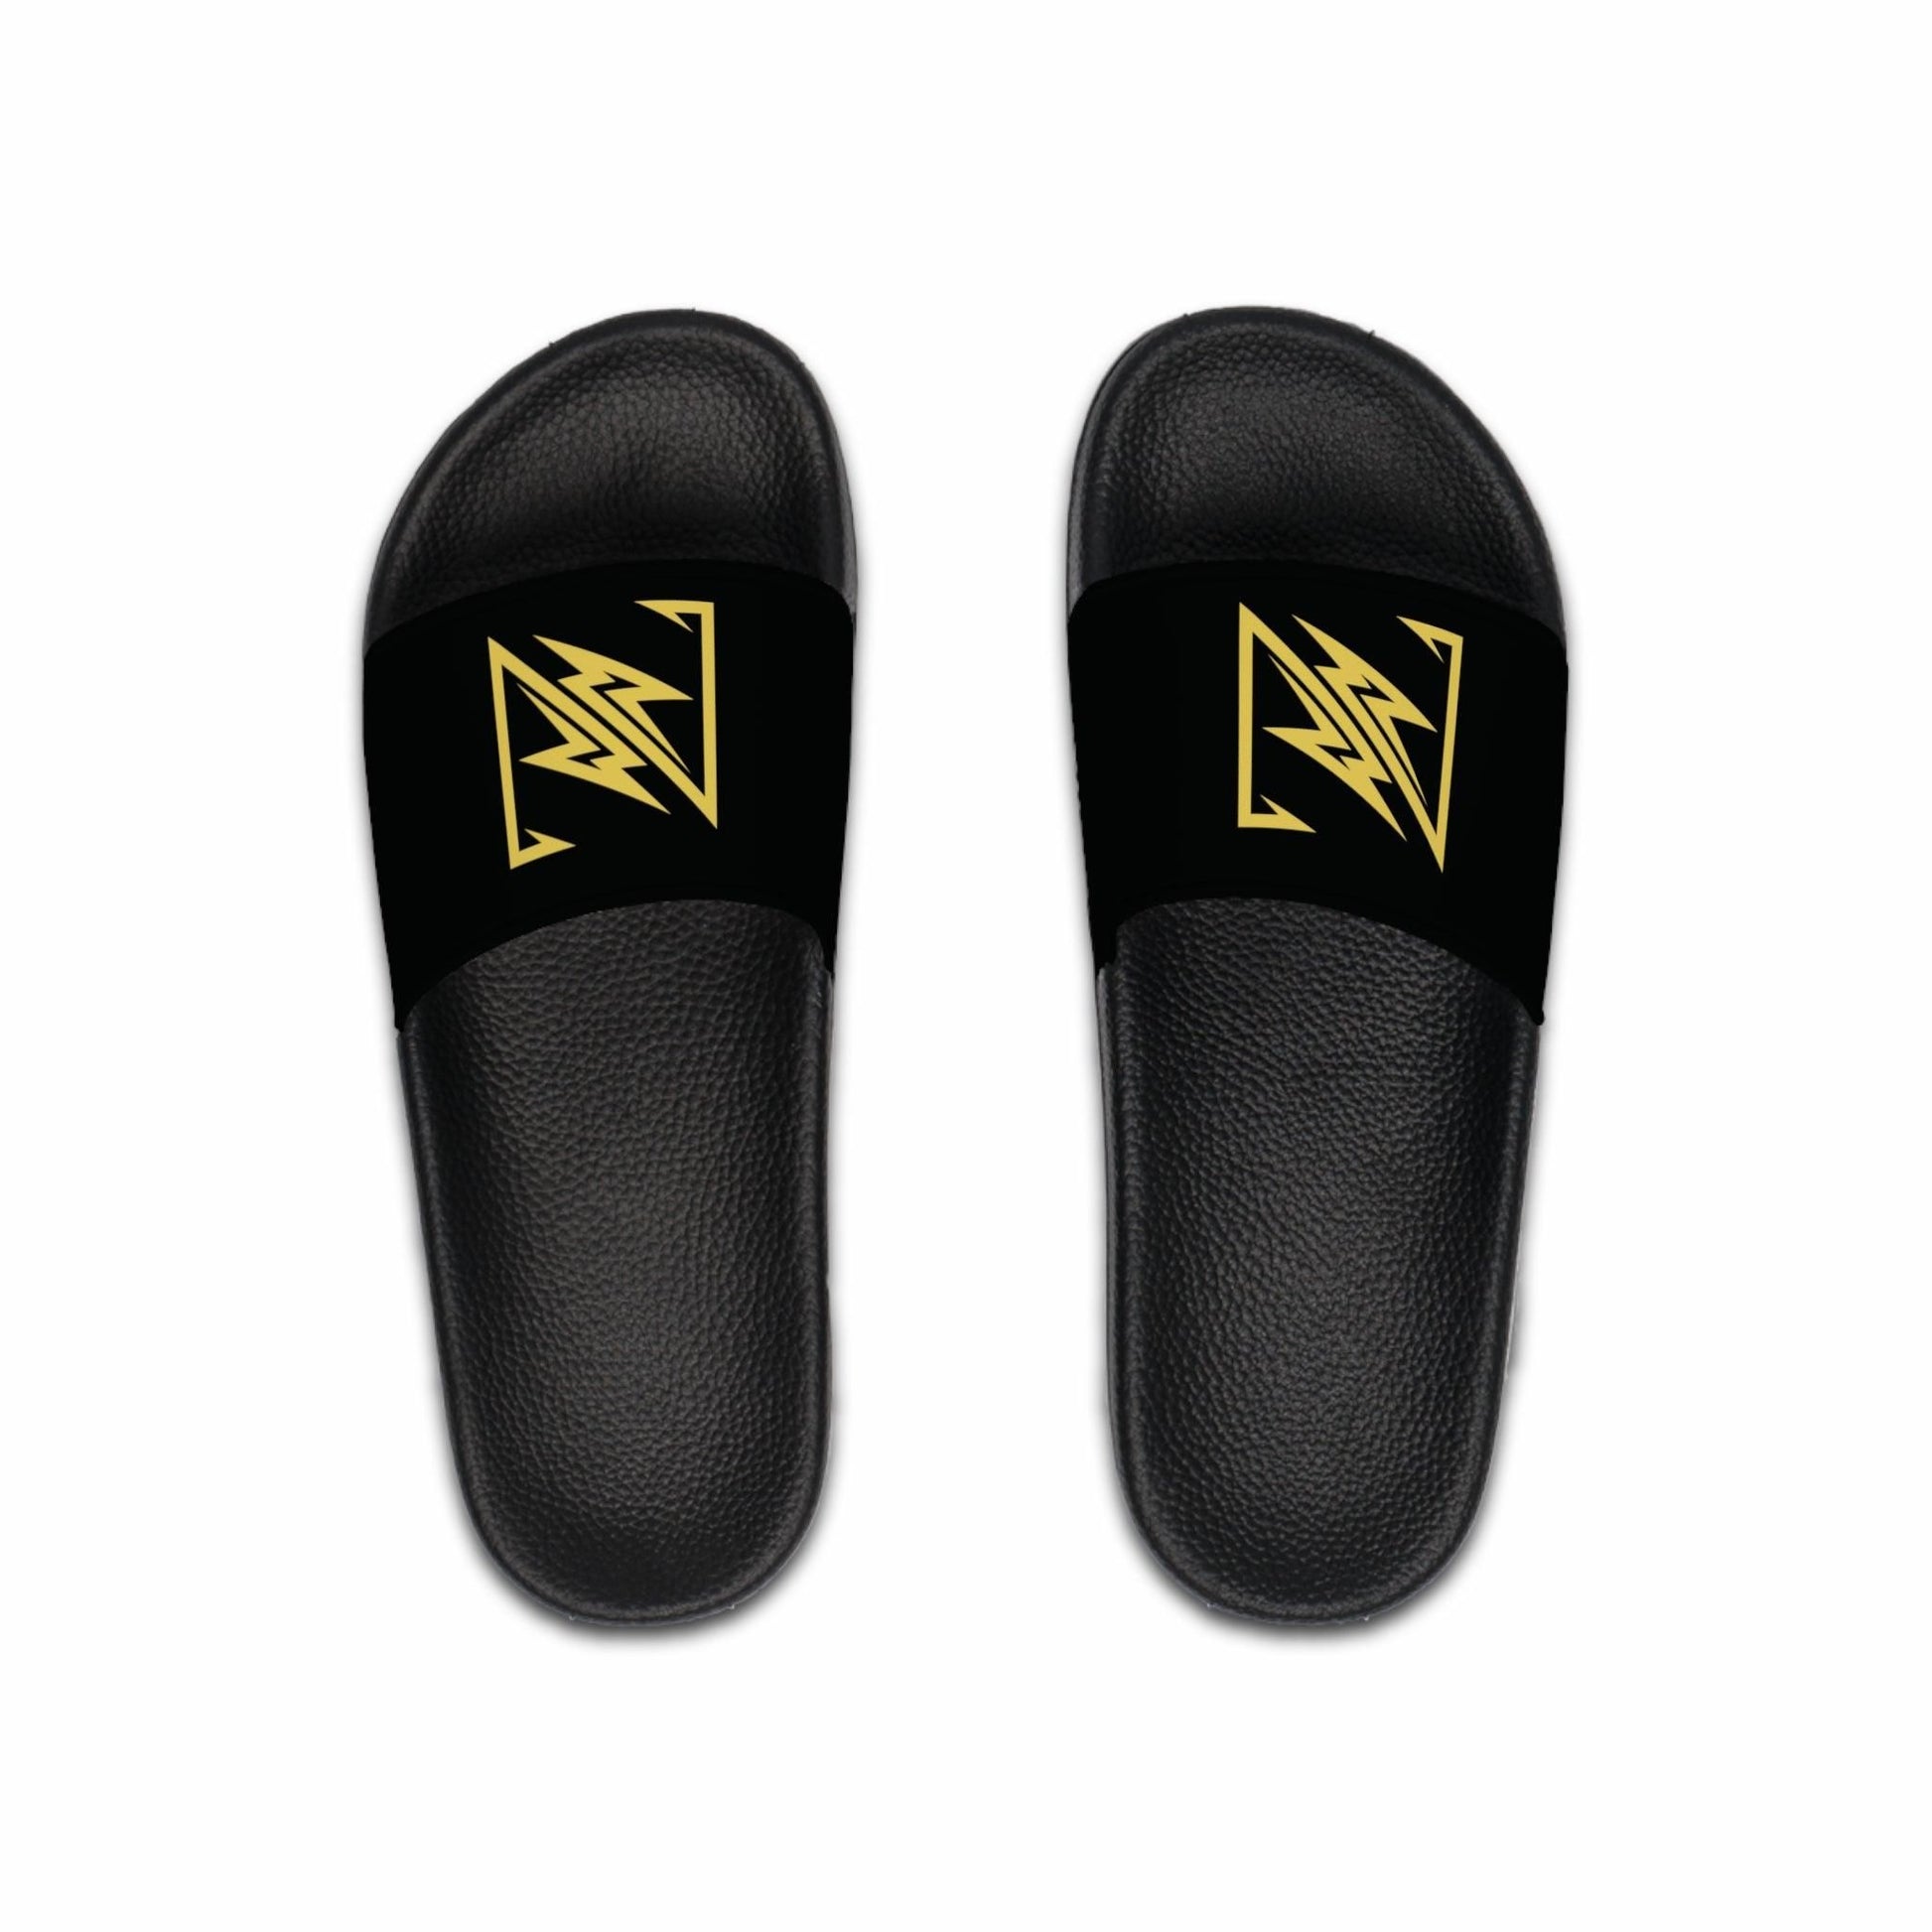 nx vogue Men's Slide Sandals Shoes Black sole US 10 